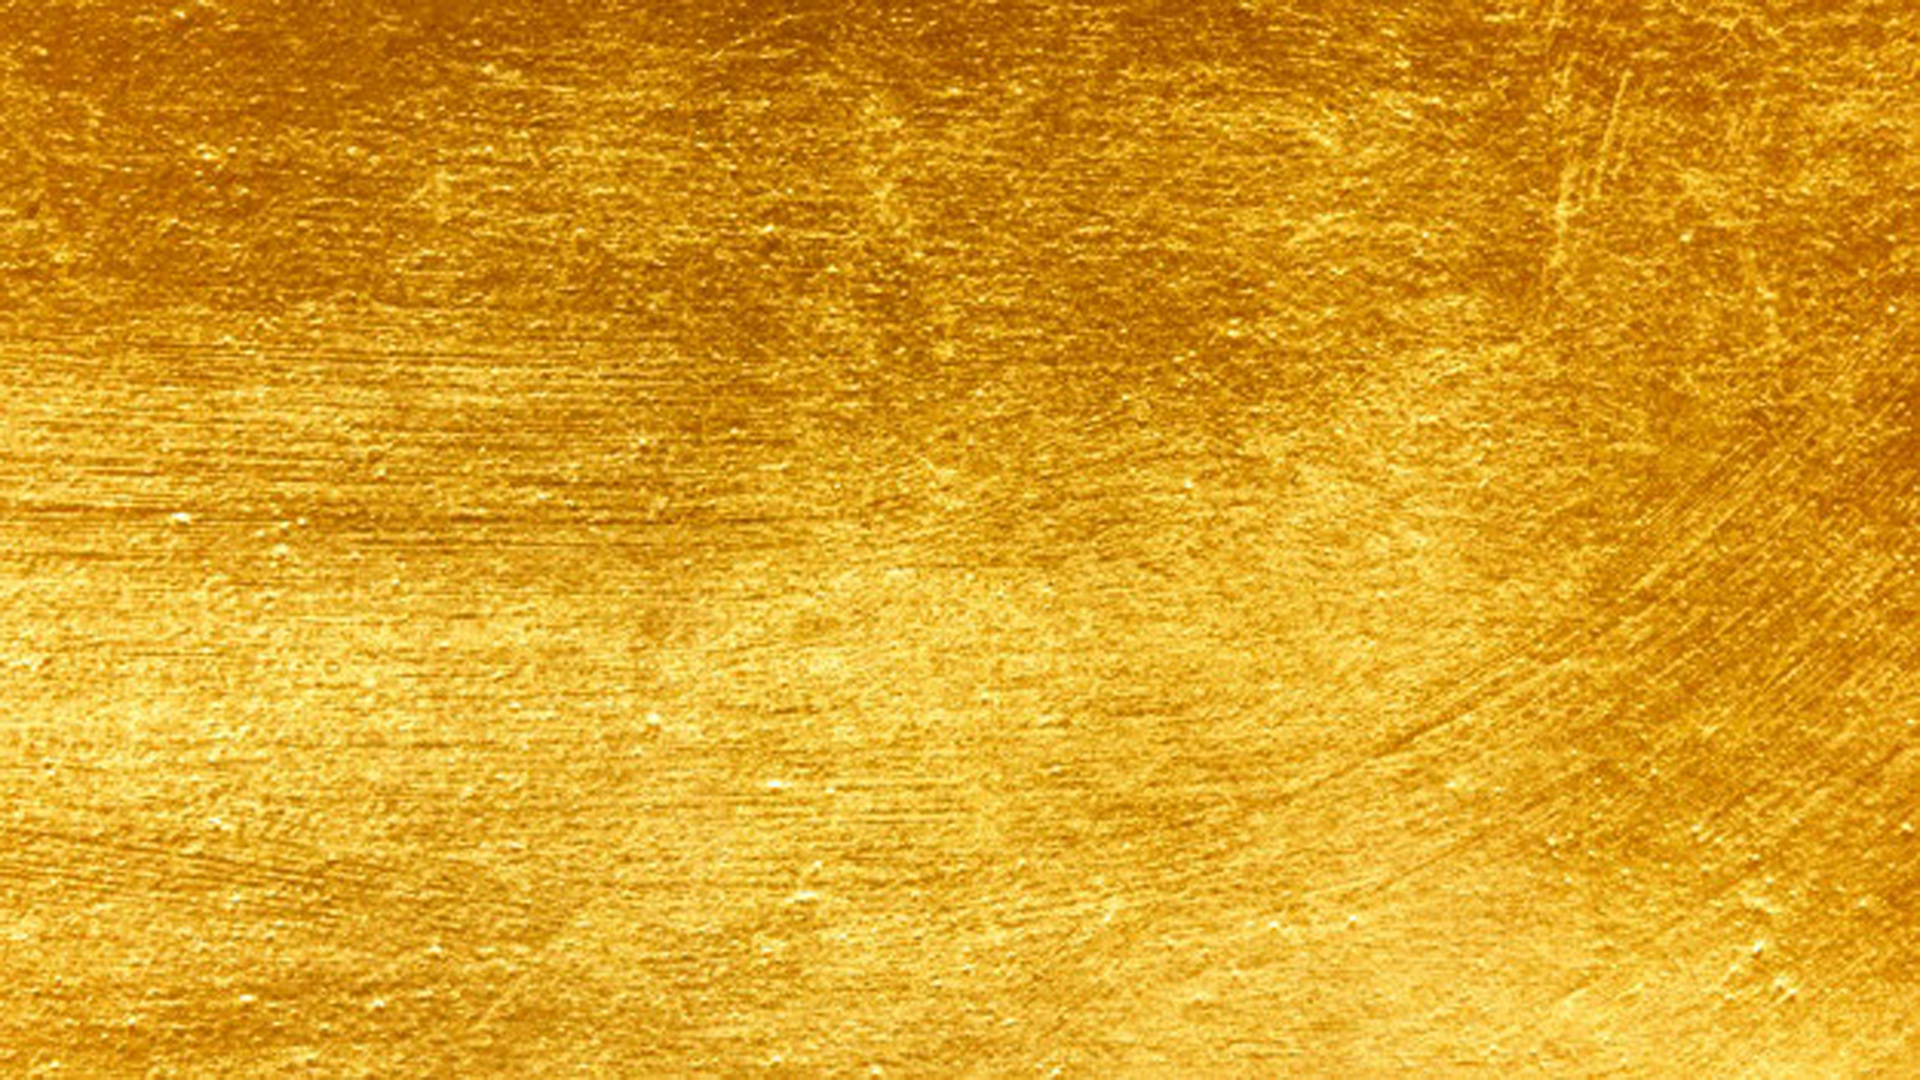 Background vàng Gold là một lựa chọn đẳng cấp và sang trọng cho bất kỳ thiết kế nào. Màu vàng gold sáng lấp lánh và đẹp mắt, đem lại sự chuyên nghiệp và đẳng cấp cho bất kỳ sản phẩm nào. Hãy xem một hình ảnh liên quan để cảm nhận sức hấp dẫn của background vàng gold.